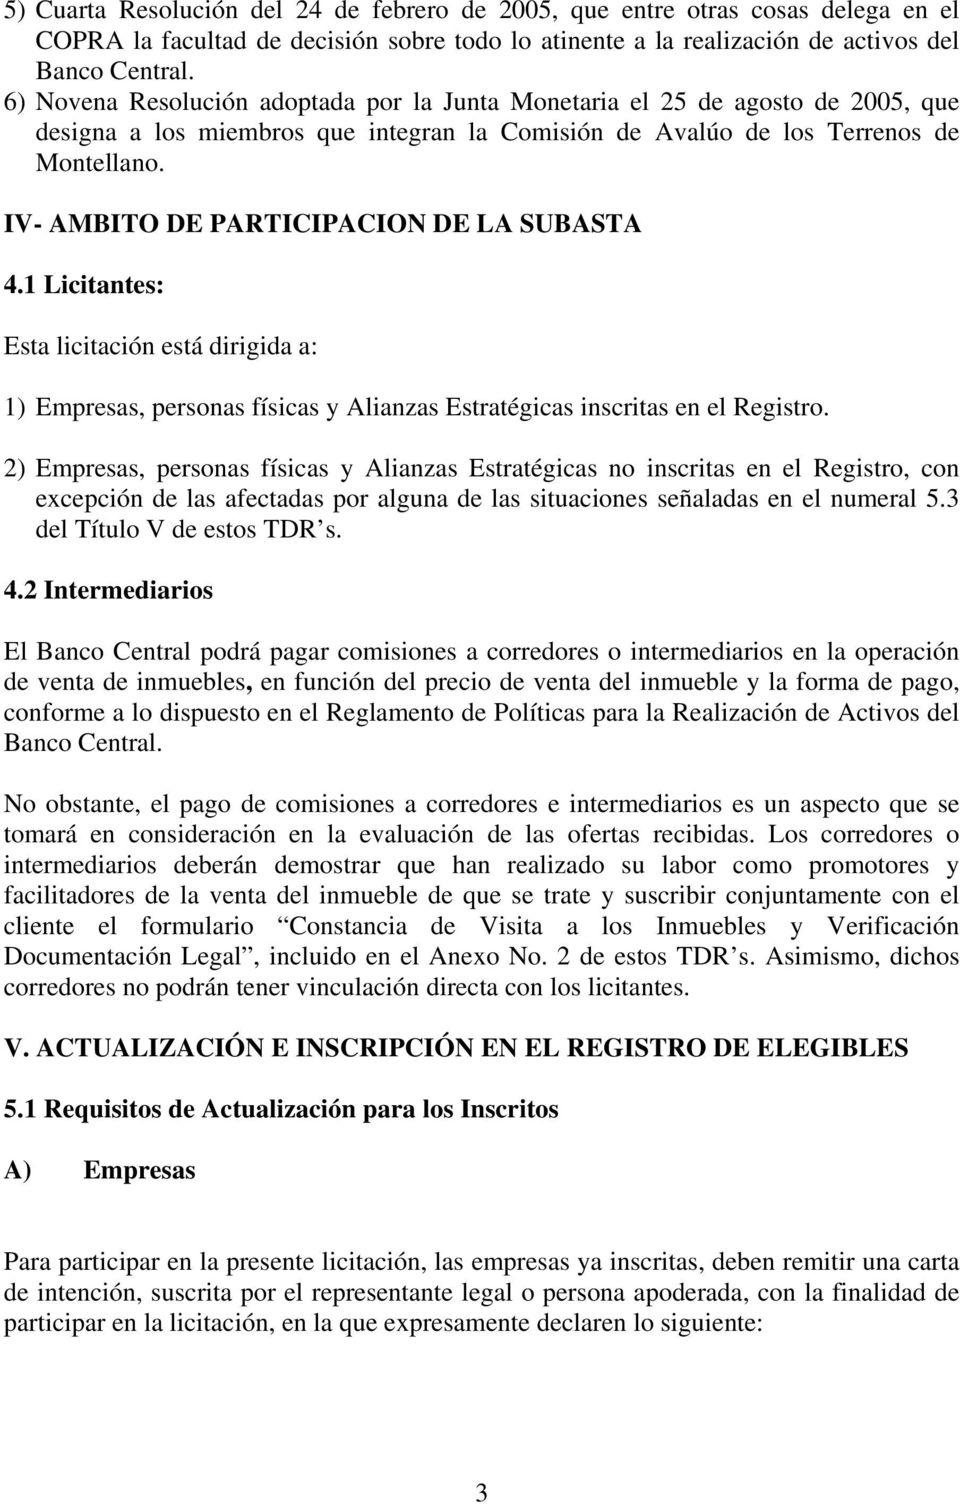 IV- AMBITO DE PARTICIPACION DE LA SUBASTA 4.1 Licitantes: Esta licitación está dirigida a: 1) Empresas, personas físicas y Alianzas Estratégicas inscritas en el Registro.